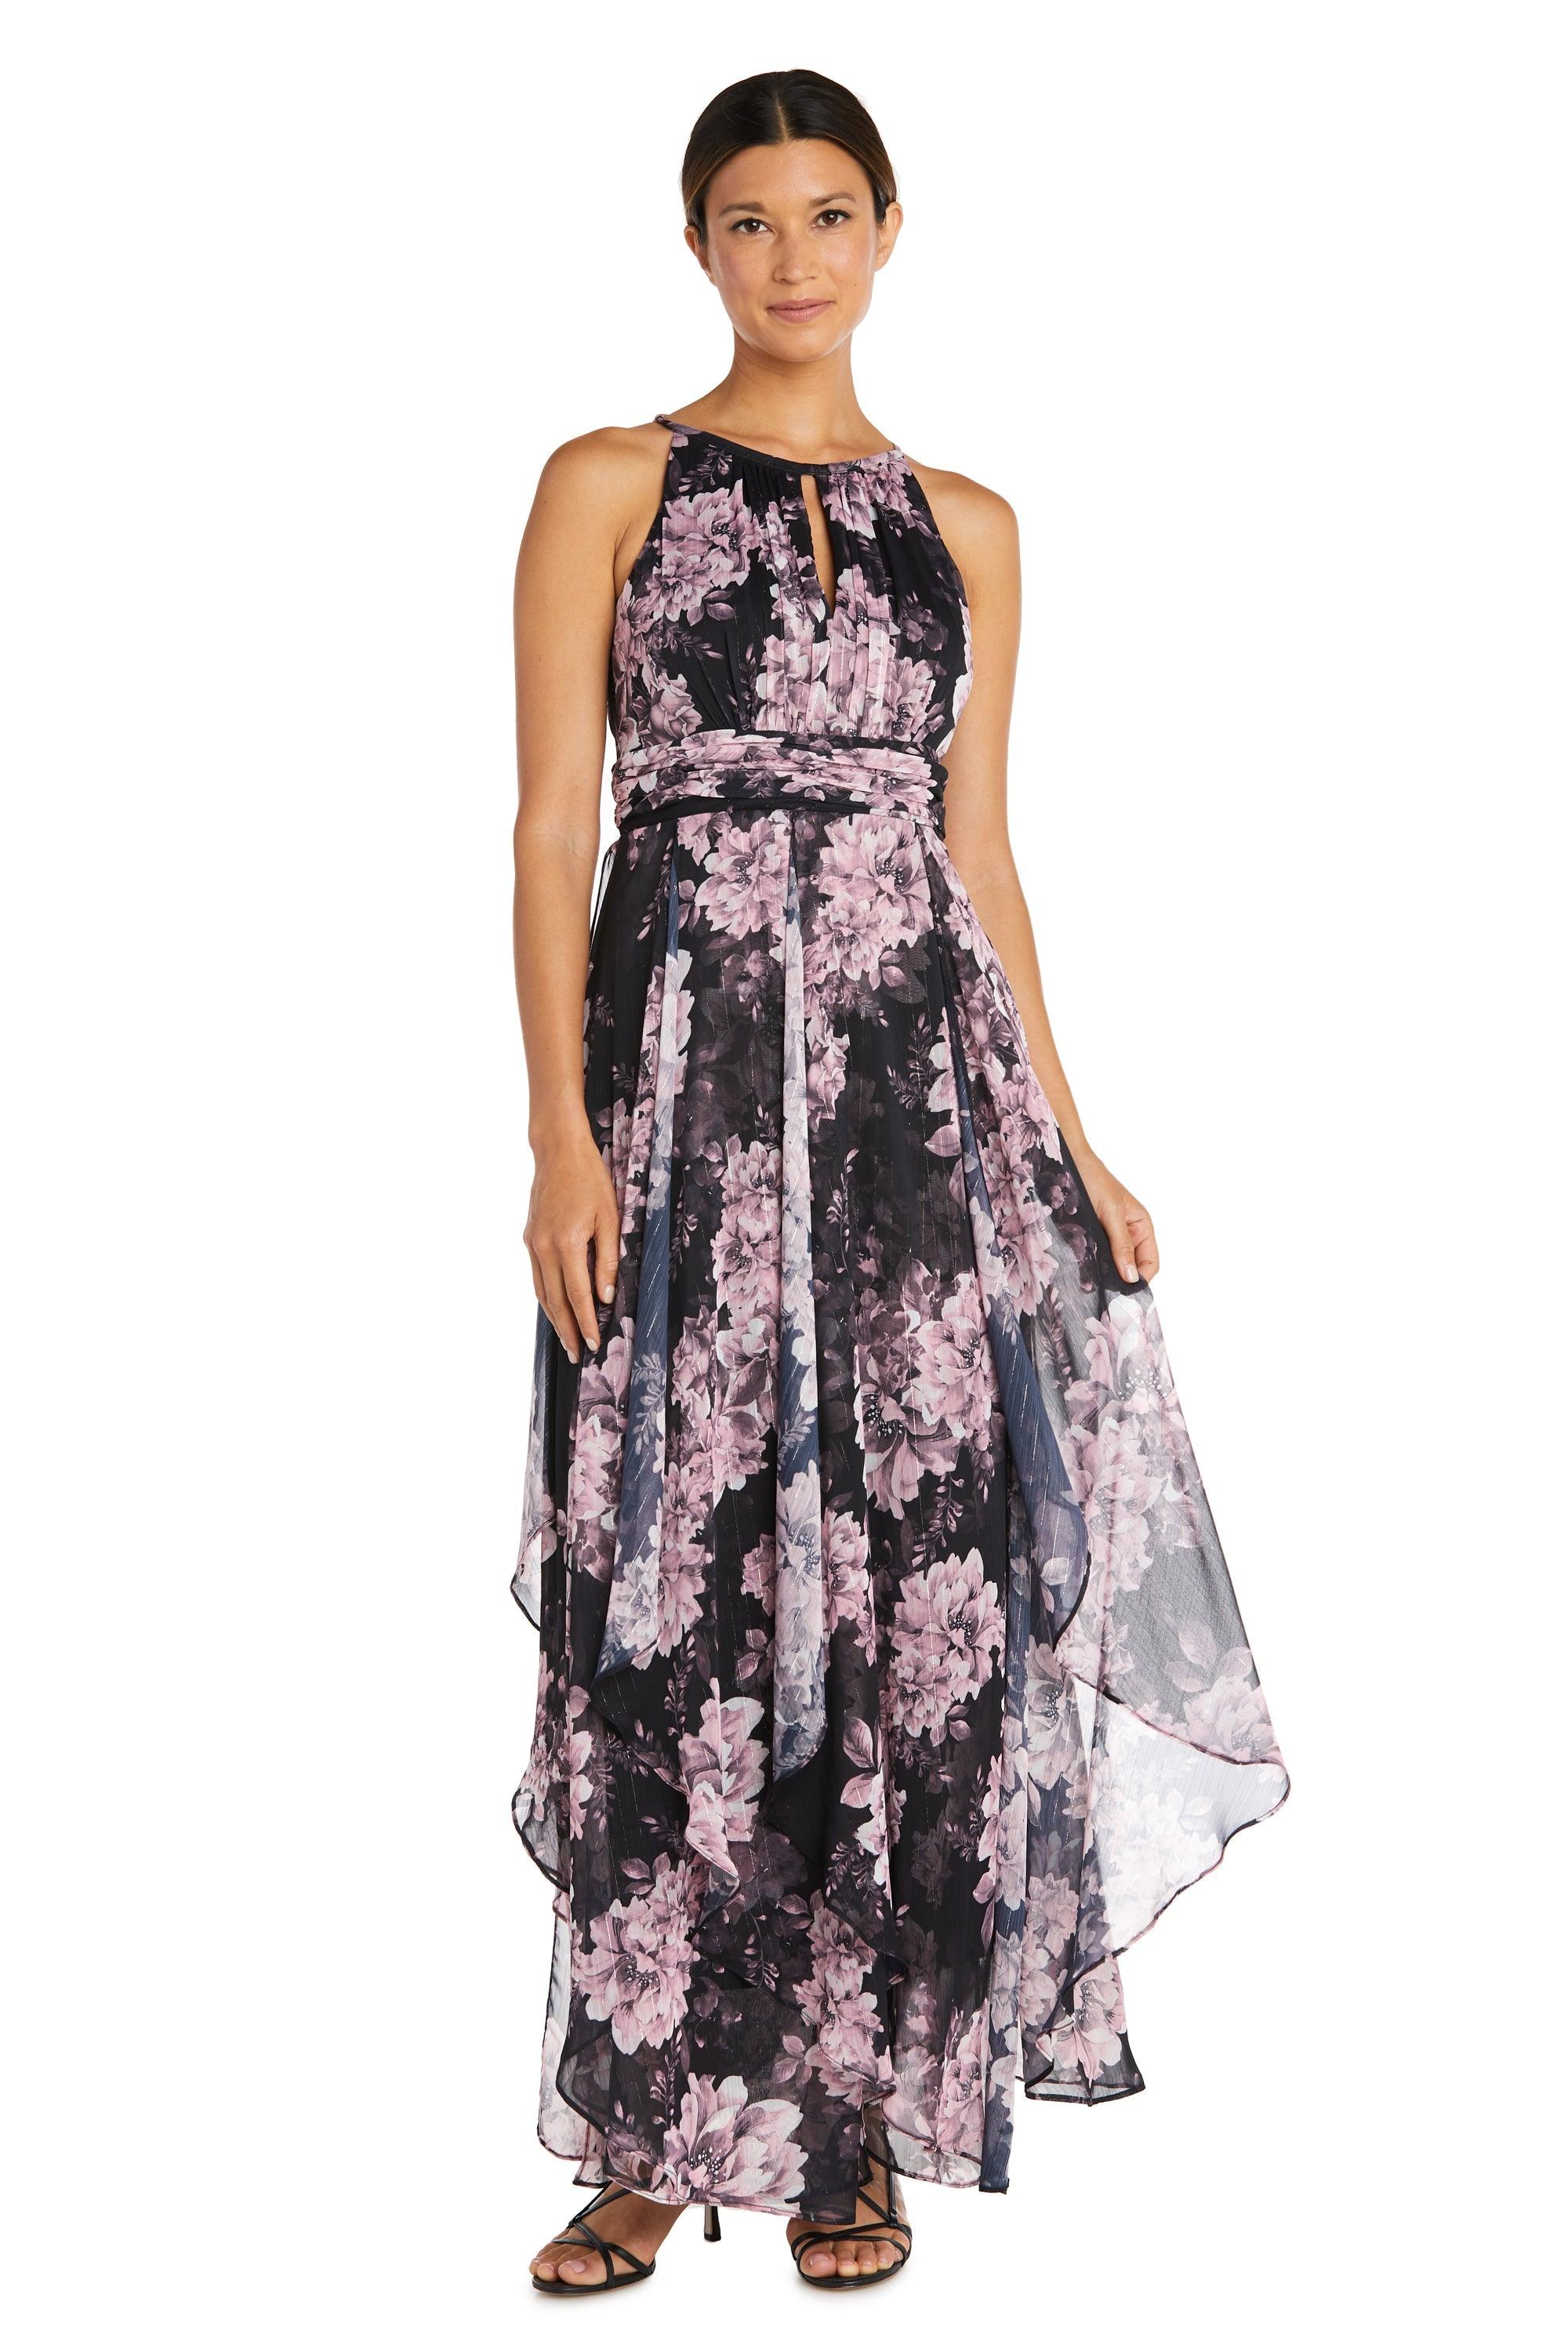 R&M Richards Long Formal Floral Petite Dress 7928P - The Dress Outlet